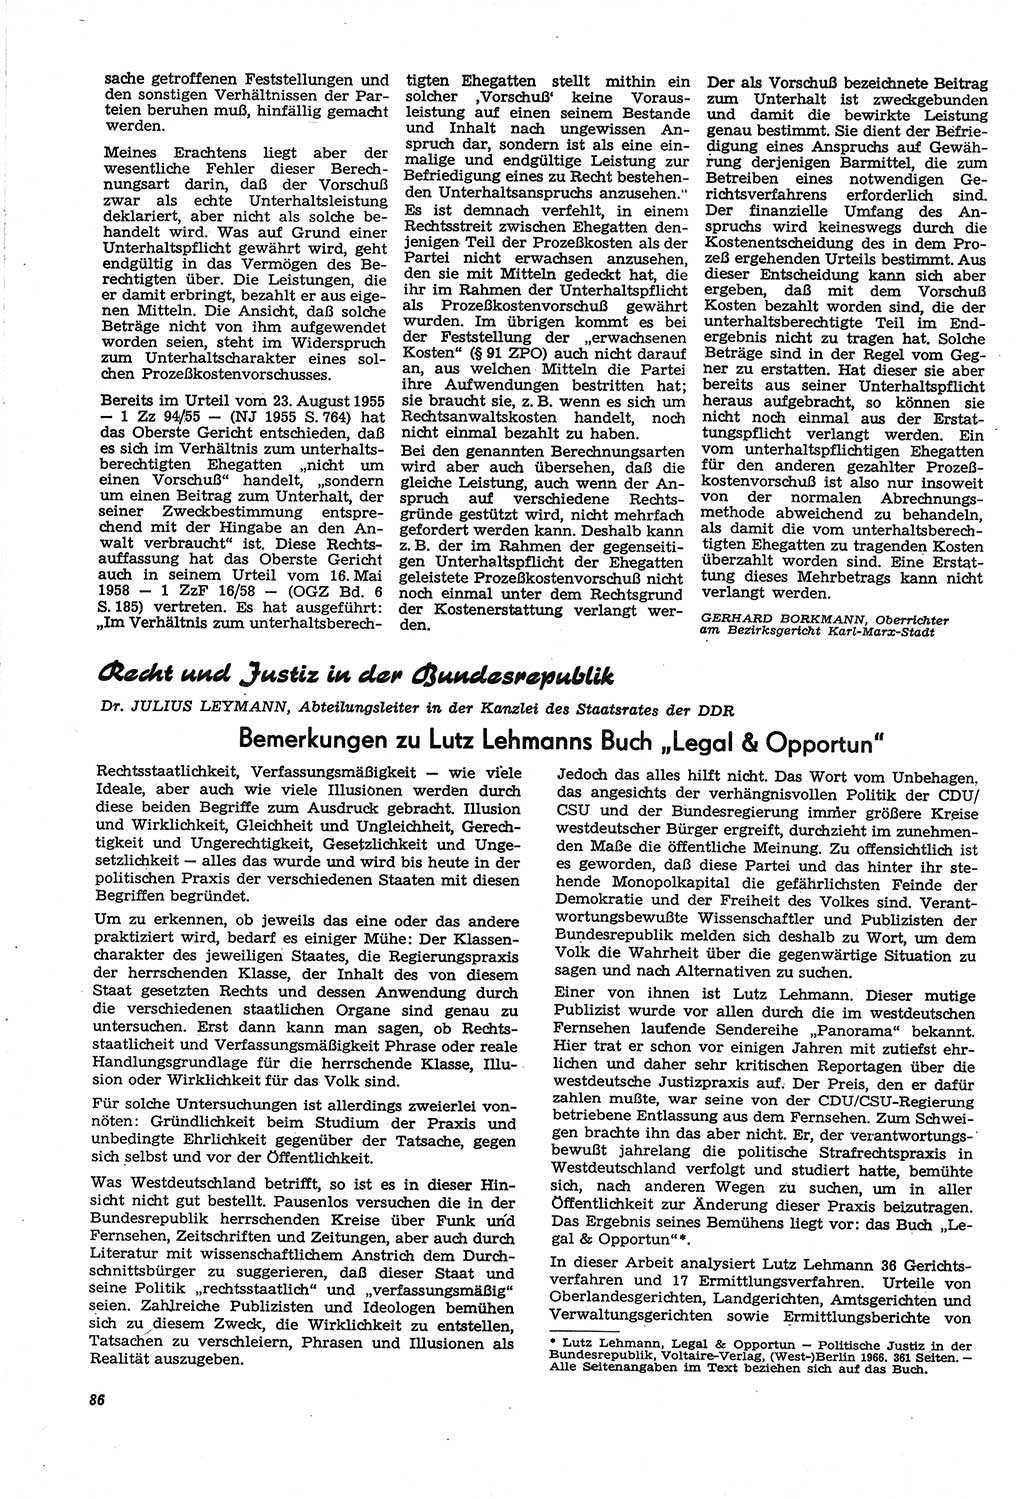 Neue Justiz (NJ), Zeitschrift für Recht und Rechtswissenschaft [Deutsche Demokratische Republik (DDR)], 21. Jahrgang 1967, Seite 86 (NJ DDR 1967, S. 86)